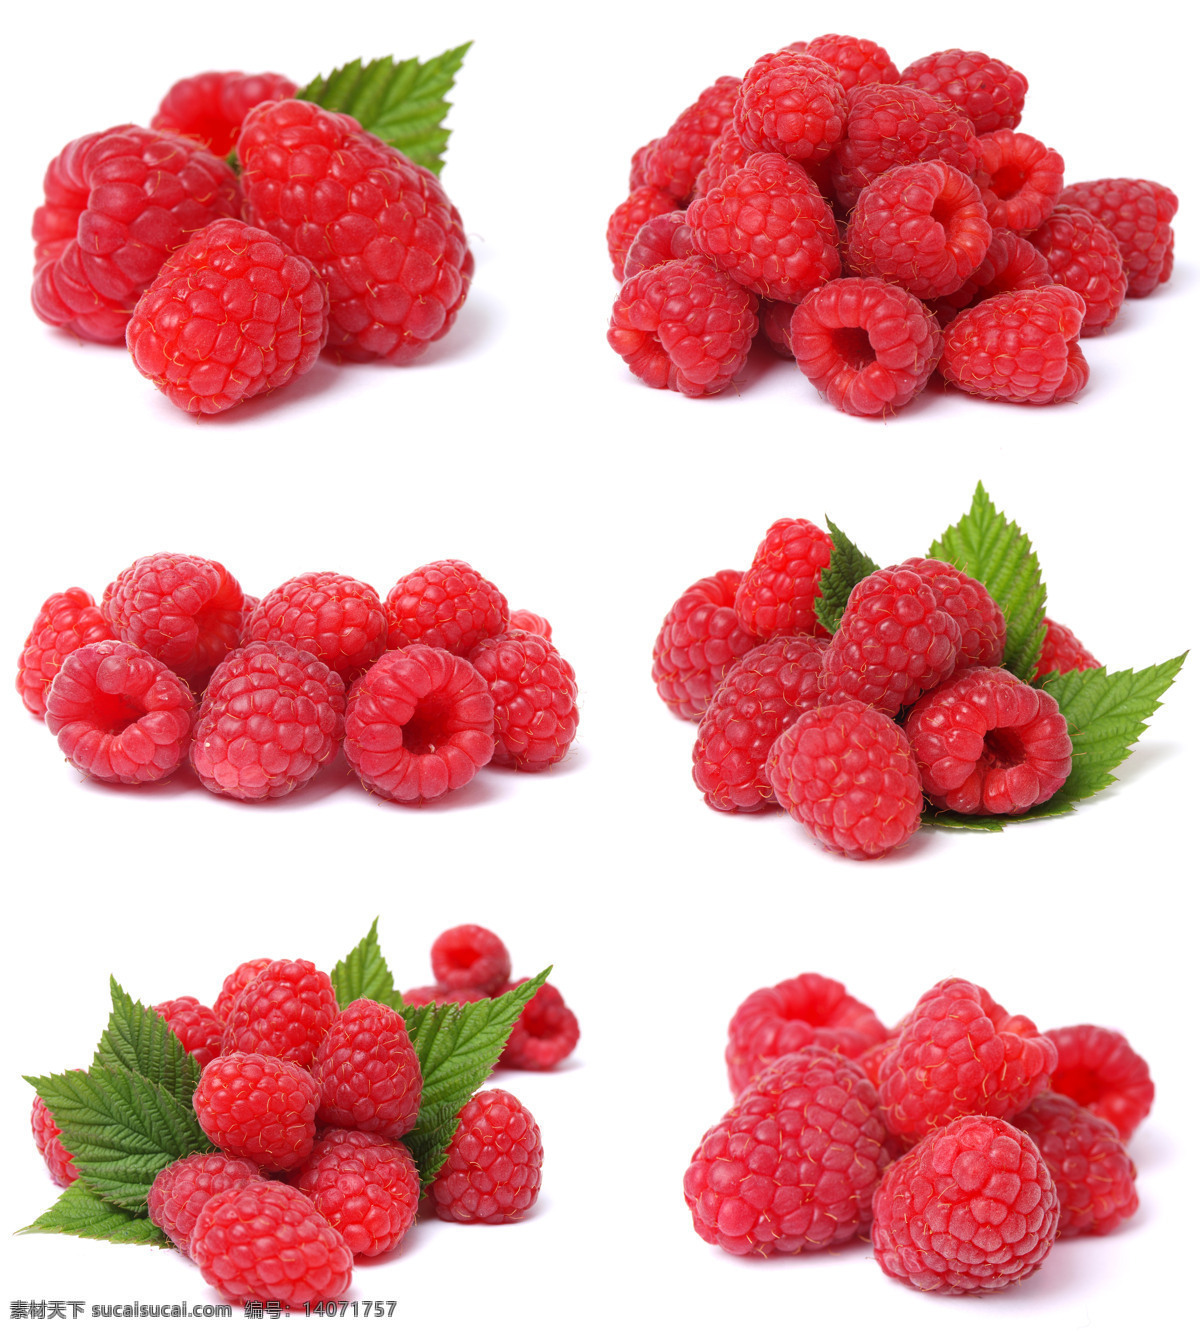 新鲜水果摄影 新鲜水果 水果 水果摄影 水果素材 水果广告 广告素材 水果蔬菜 餐饮美食 白色